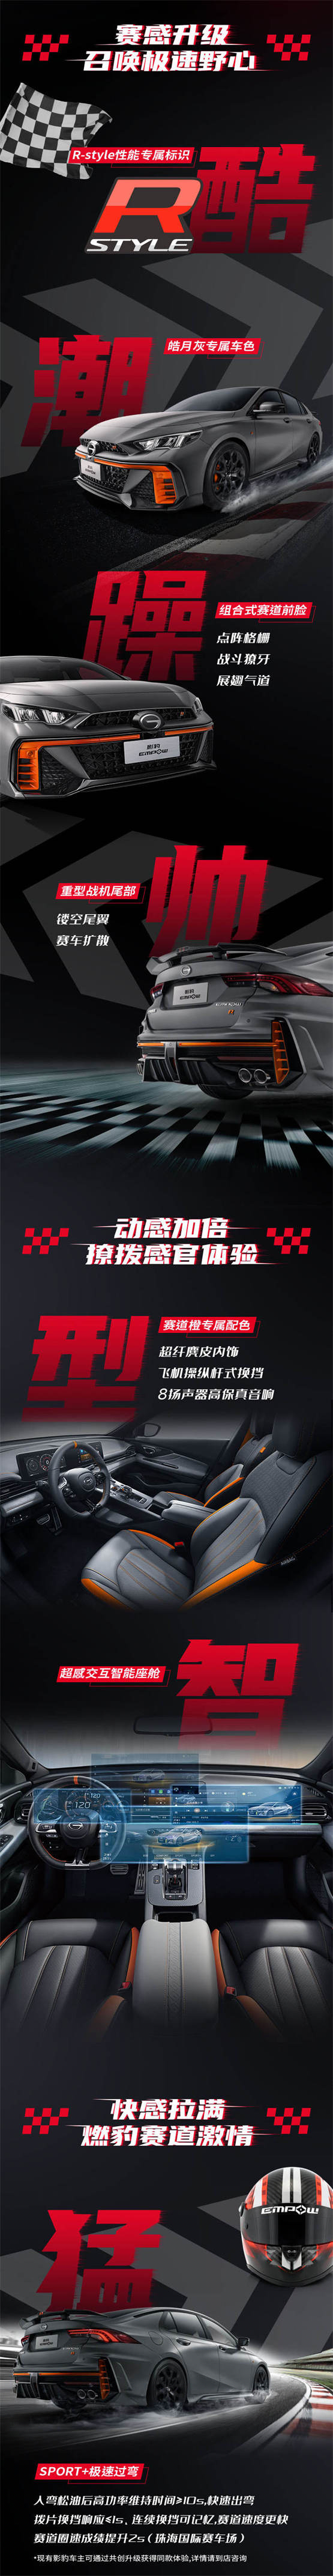 影豹R-Style赛道版惠州区域上市发布    